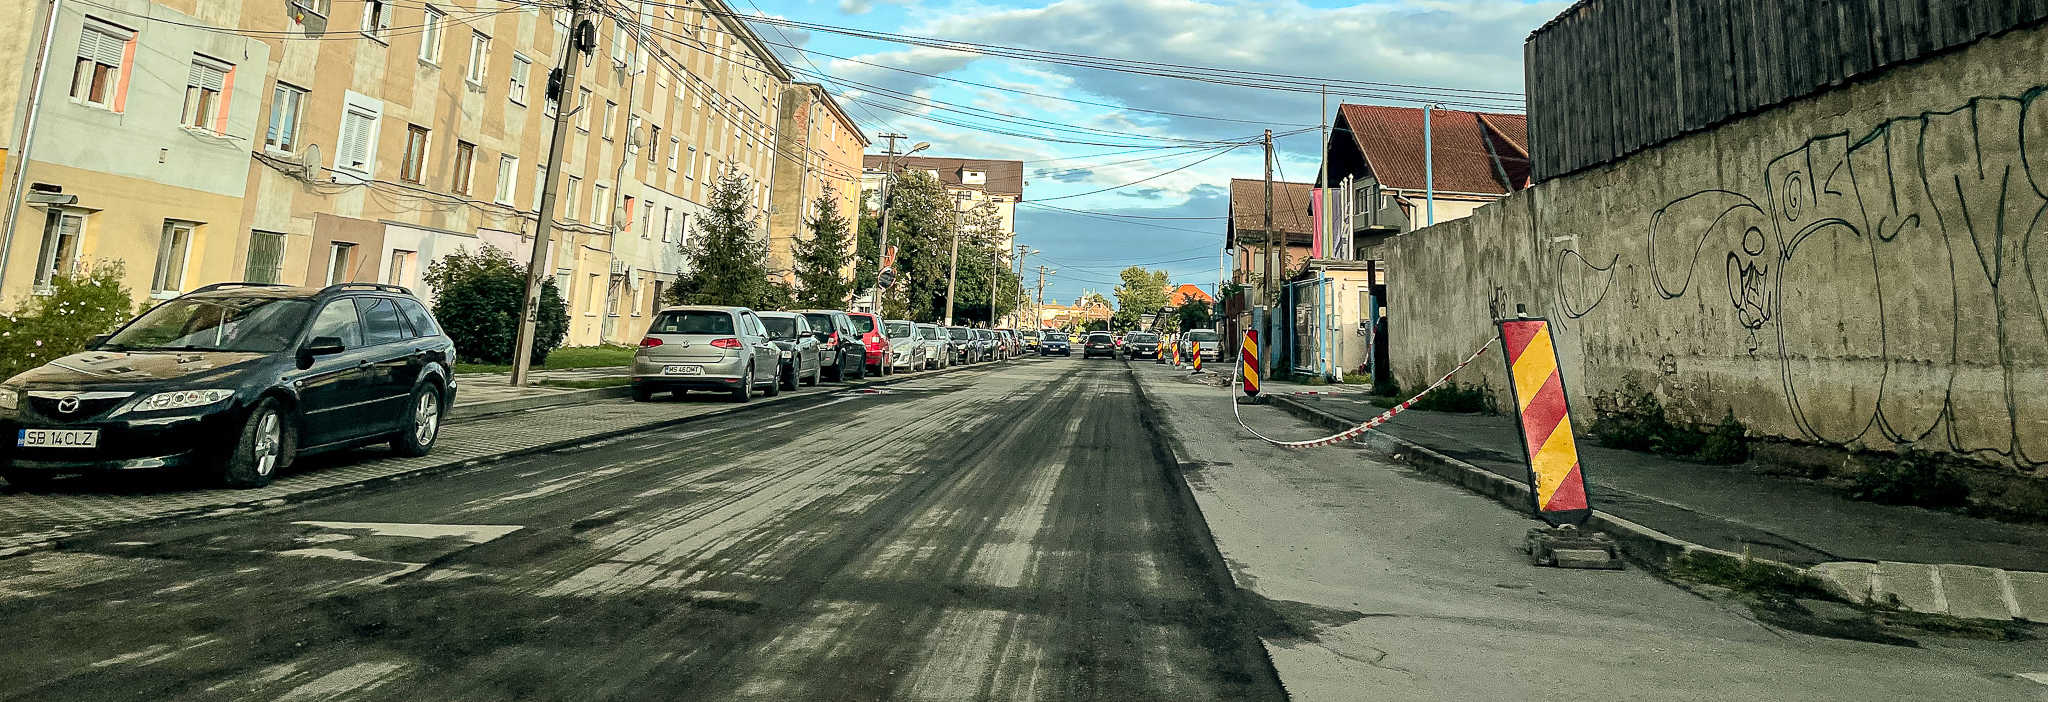 video foto: lucrări de modernizare pe strada țiglarilor - se toarnă asfalt nou